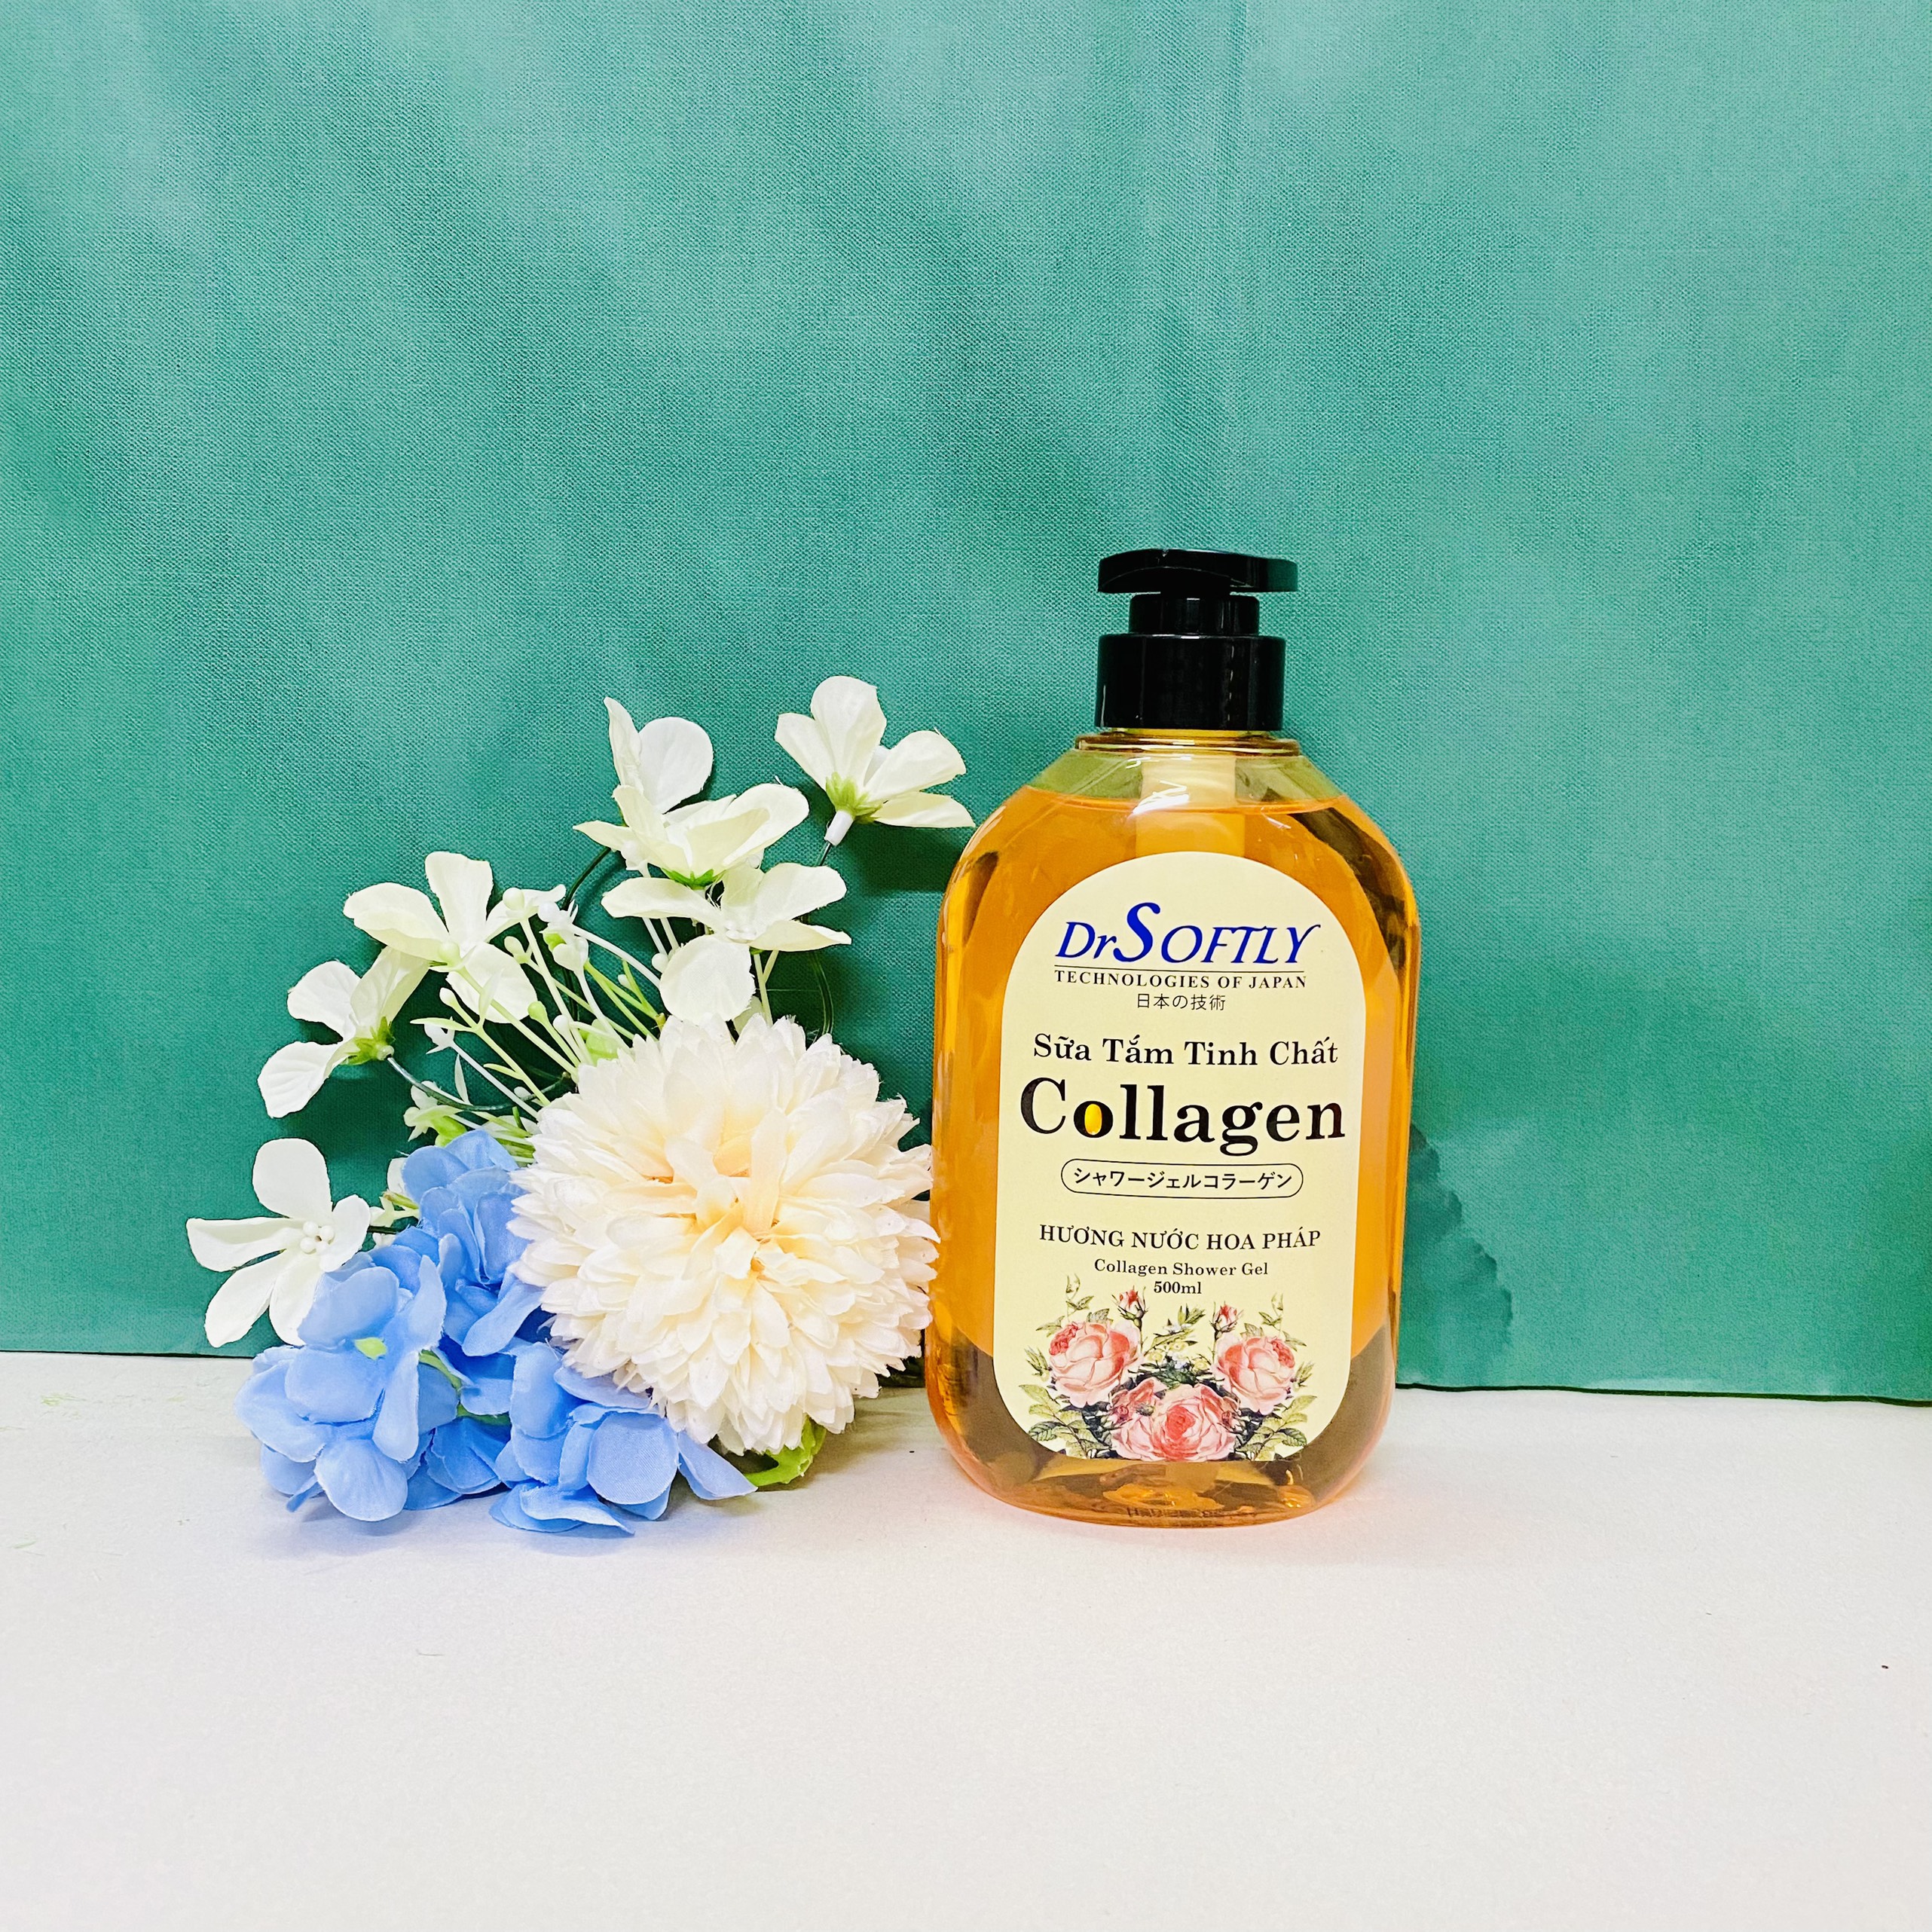 Sữa tắm tinh chất Collagen, Hương nước hoa Pháp - Da khỏe, sạch sâuHương nước hoa quyến rũ